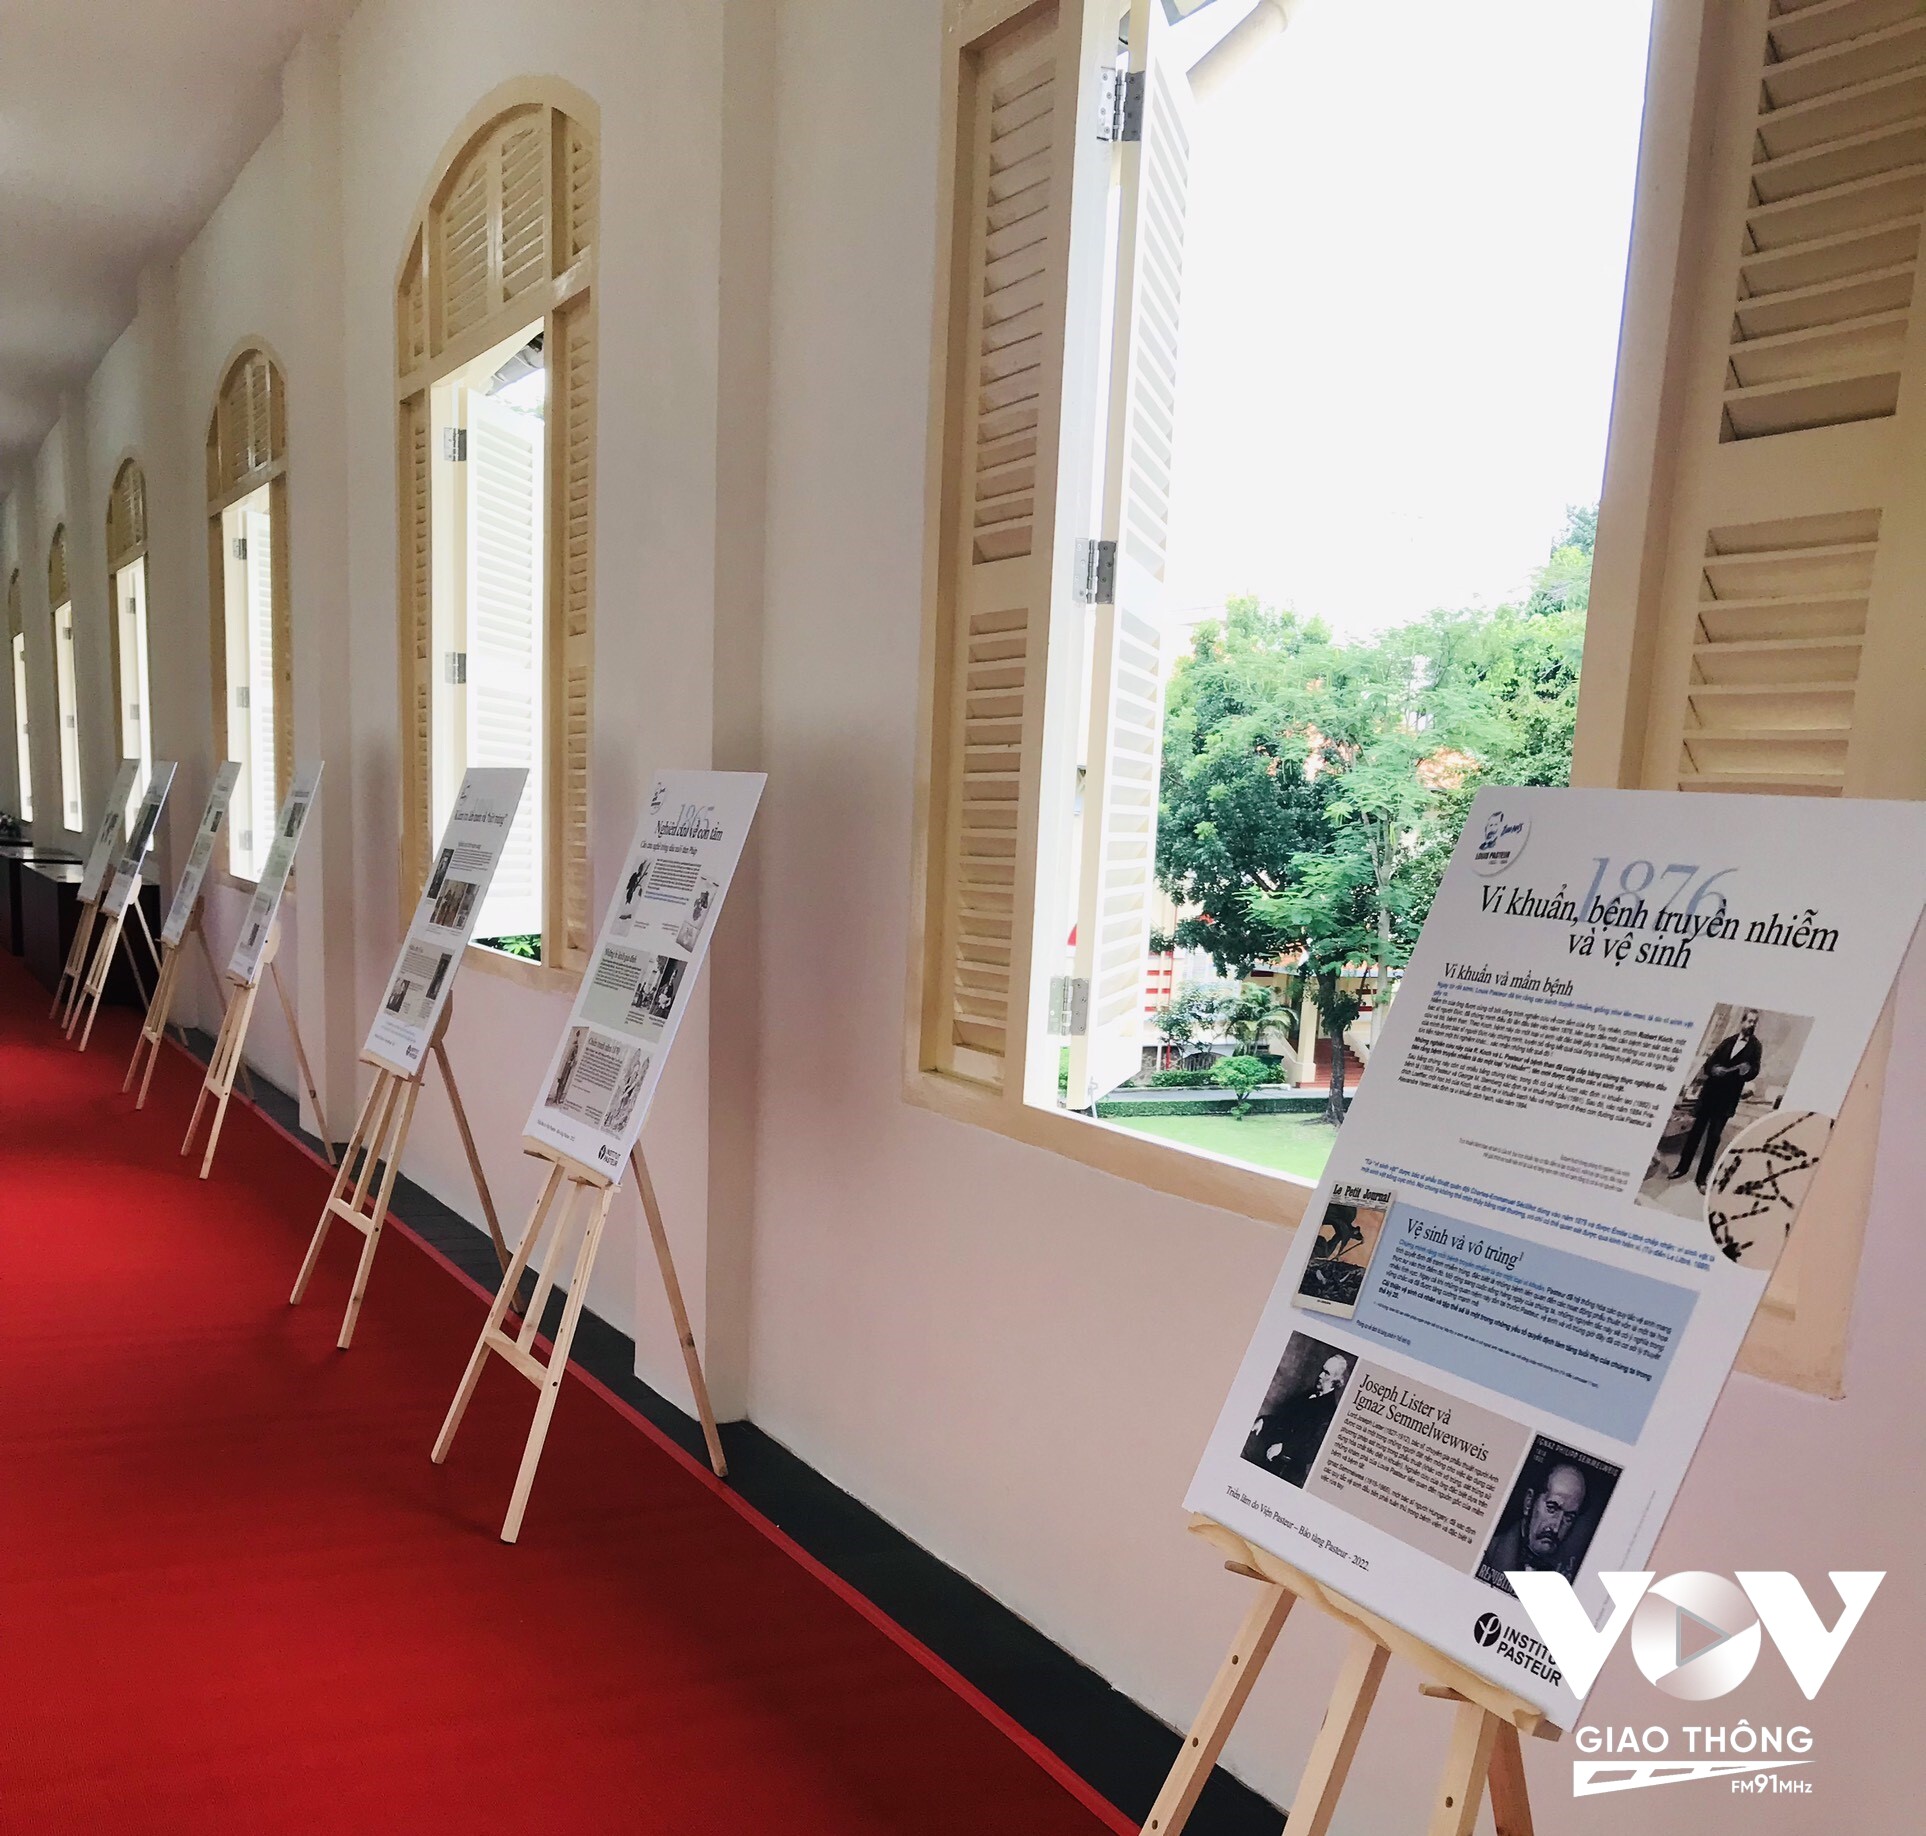 Ngày 12/9 Viện Pasteur Thành phố Hồ Chí Minh, Tổng lãnh sự quán Pháp tại TP.HCM tổ chức lễ kỷ niệm và triển lãm ảnh về cuộc đời và sự nghiệp của Louis Pasteur